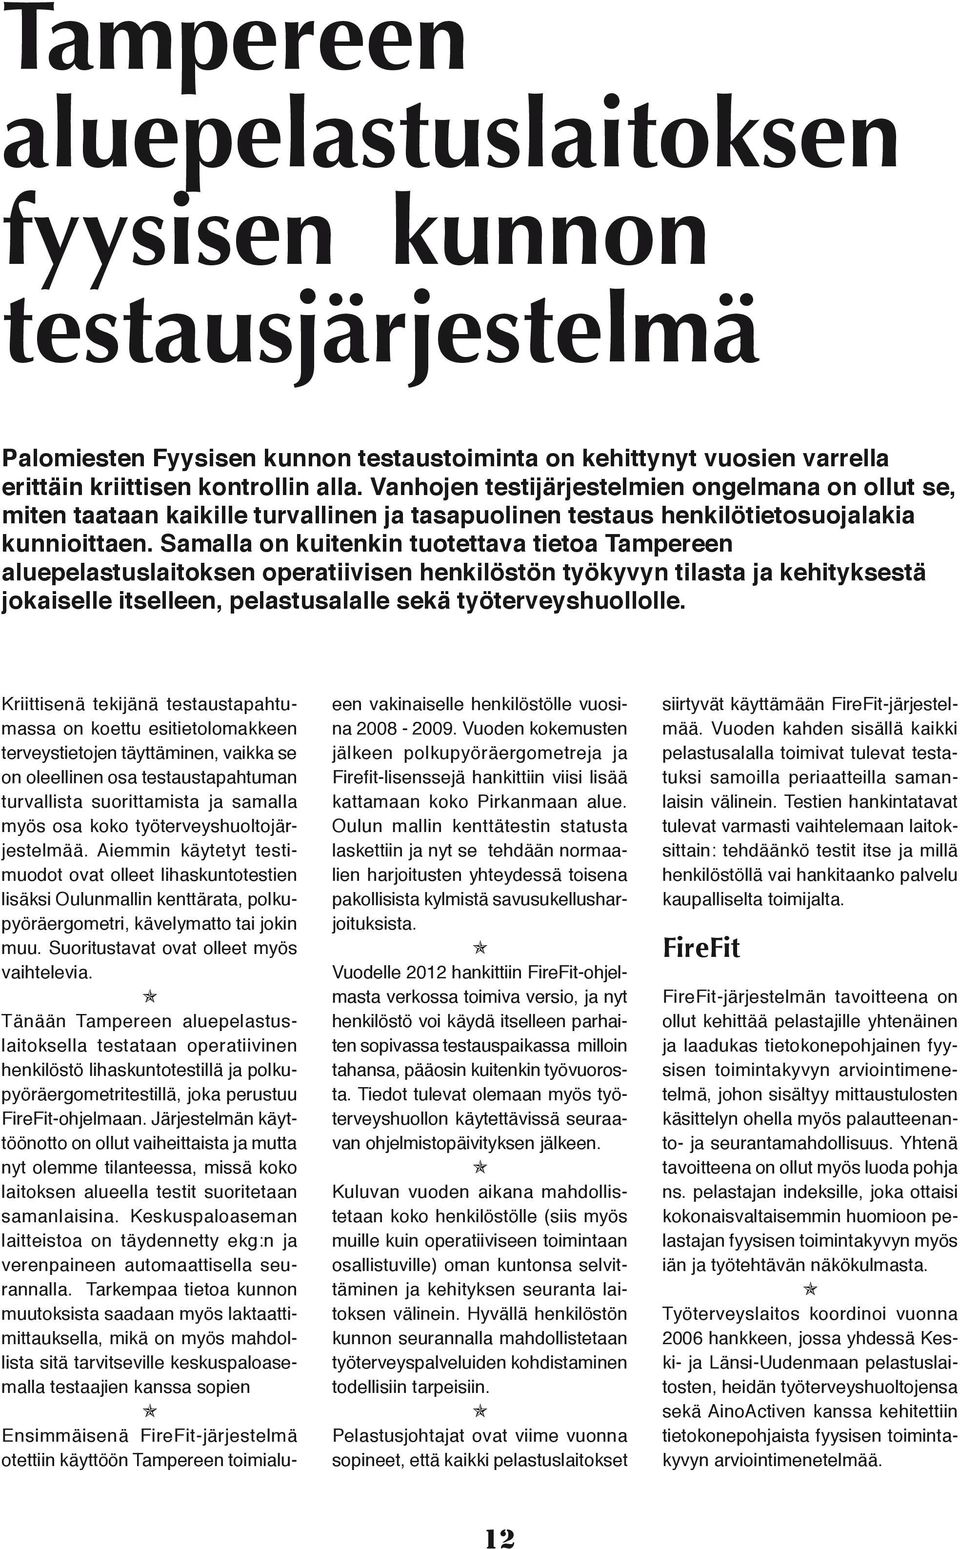 Samalla on kuitenkin tuotettava tietoa Tampereen aluepelastuslaitoksen operatiivisen henkilöstön työkyvyn tilasta ja kehityksestä jokaiselle itselleen, pelastusalalle sekä työterveyshuollolle.